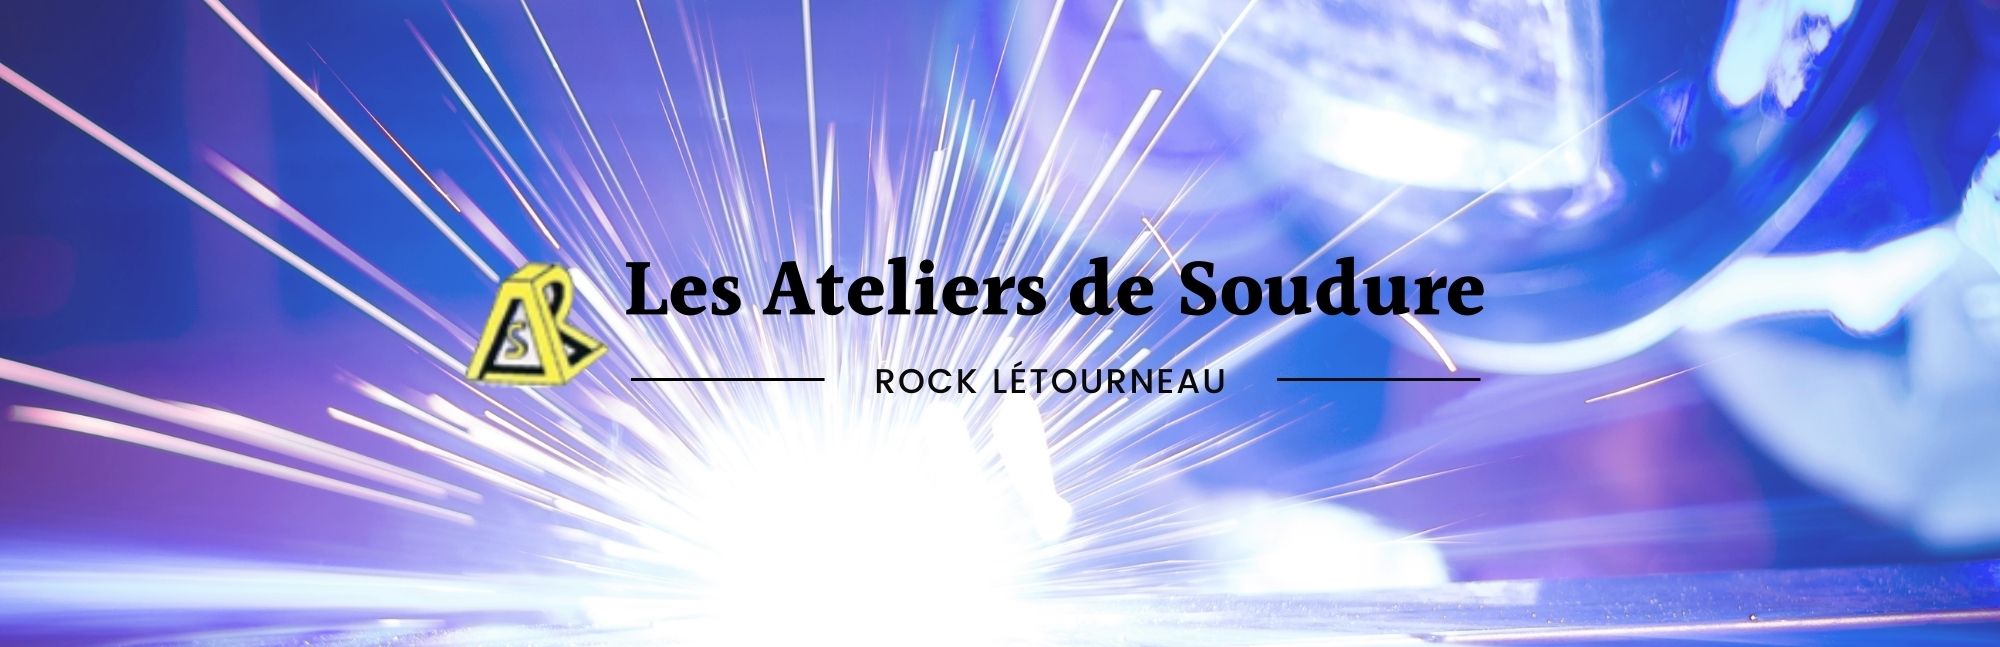 Les Ateliers de Soudure Rock Létourneau